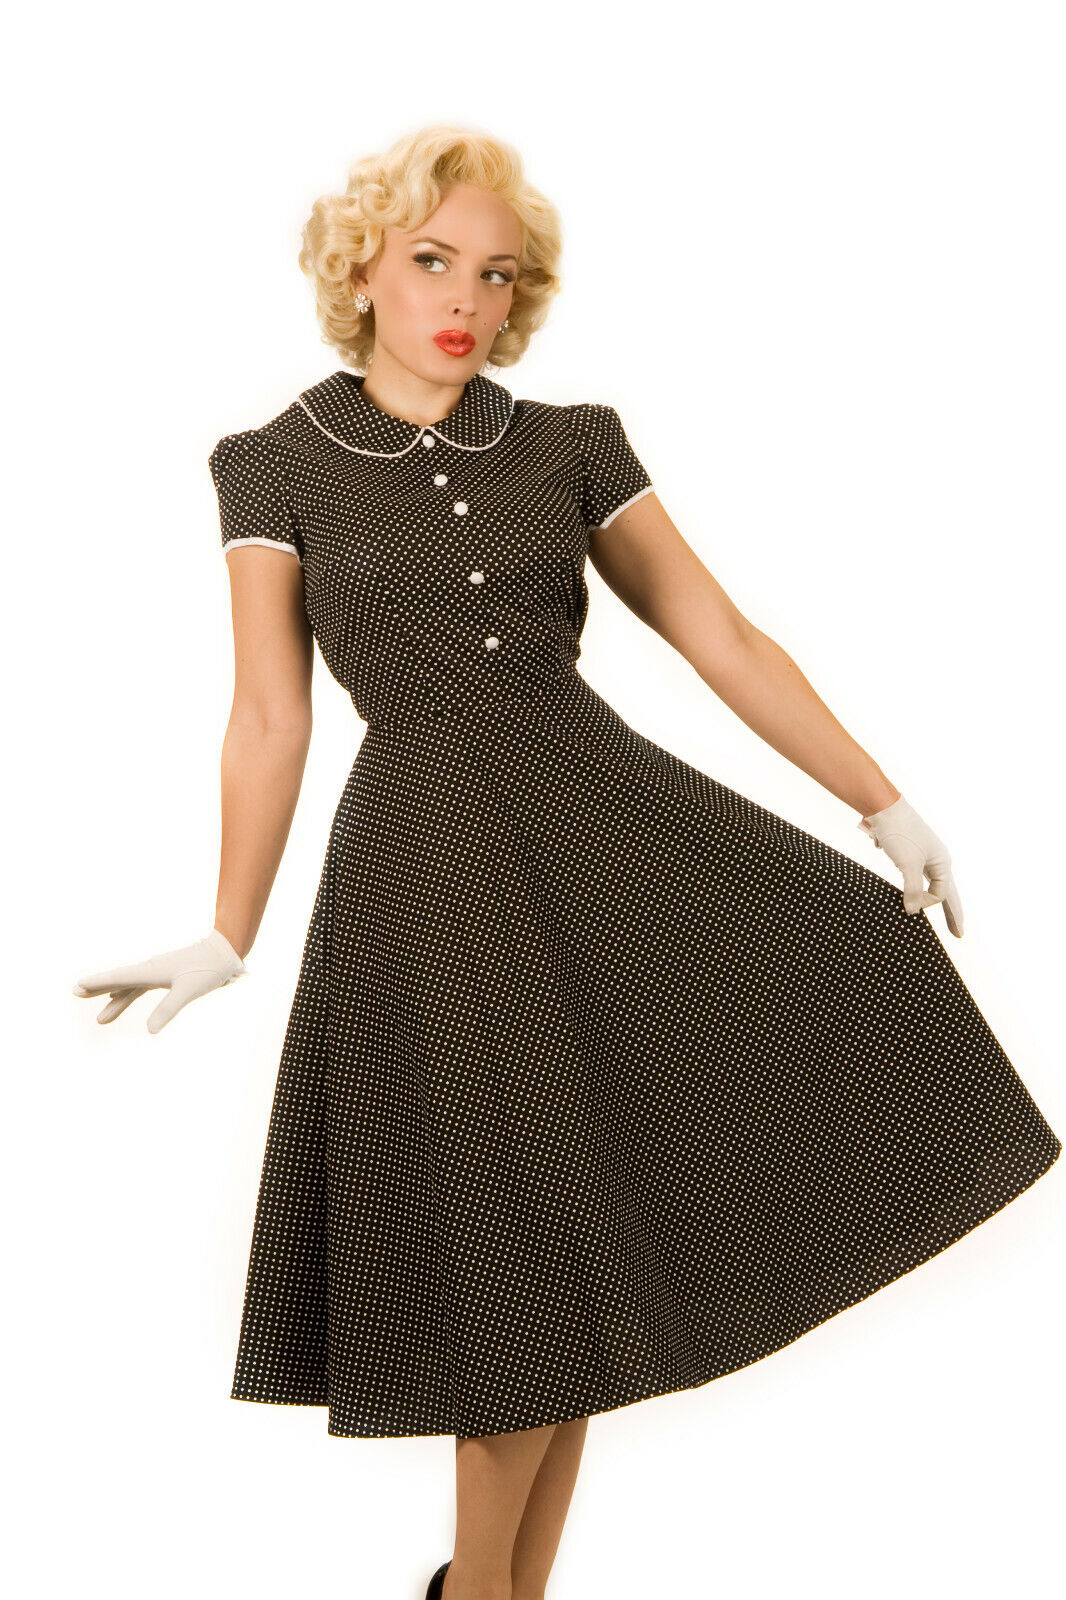 Платья в стиле 40 х годов фото